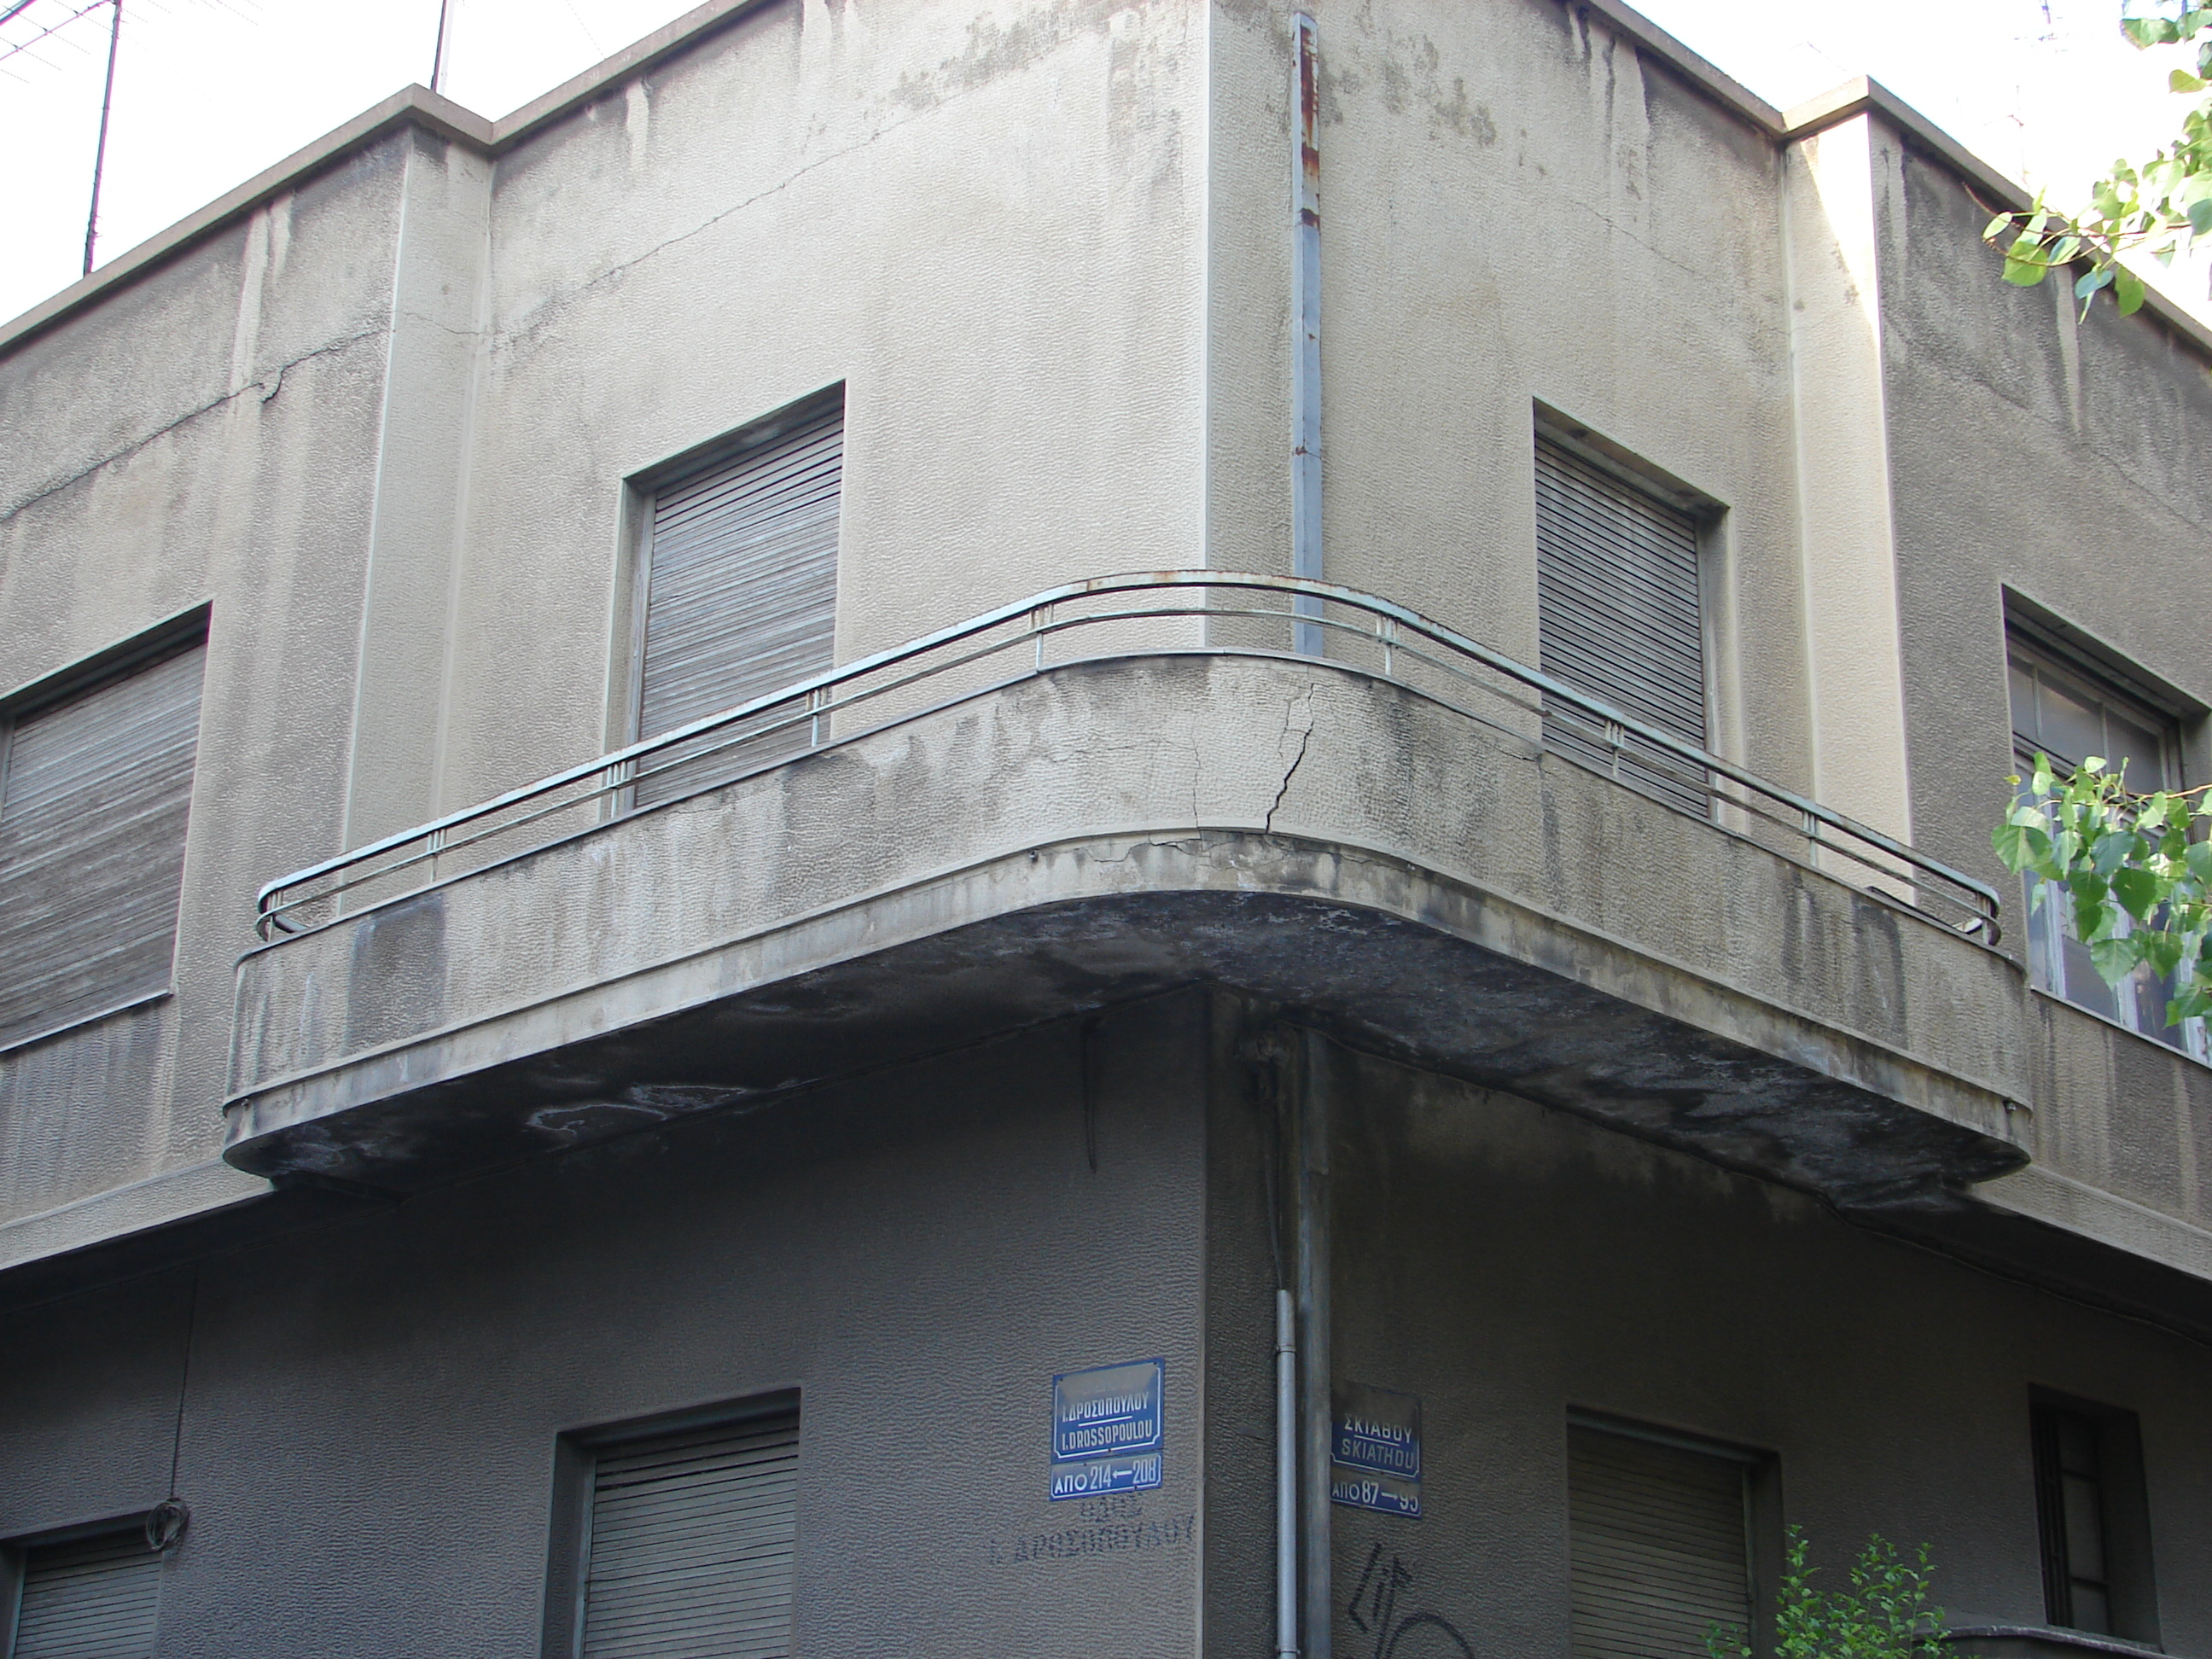 Skiathou 87, General view of the corner balcony (2013)